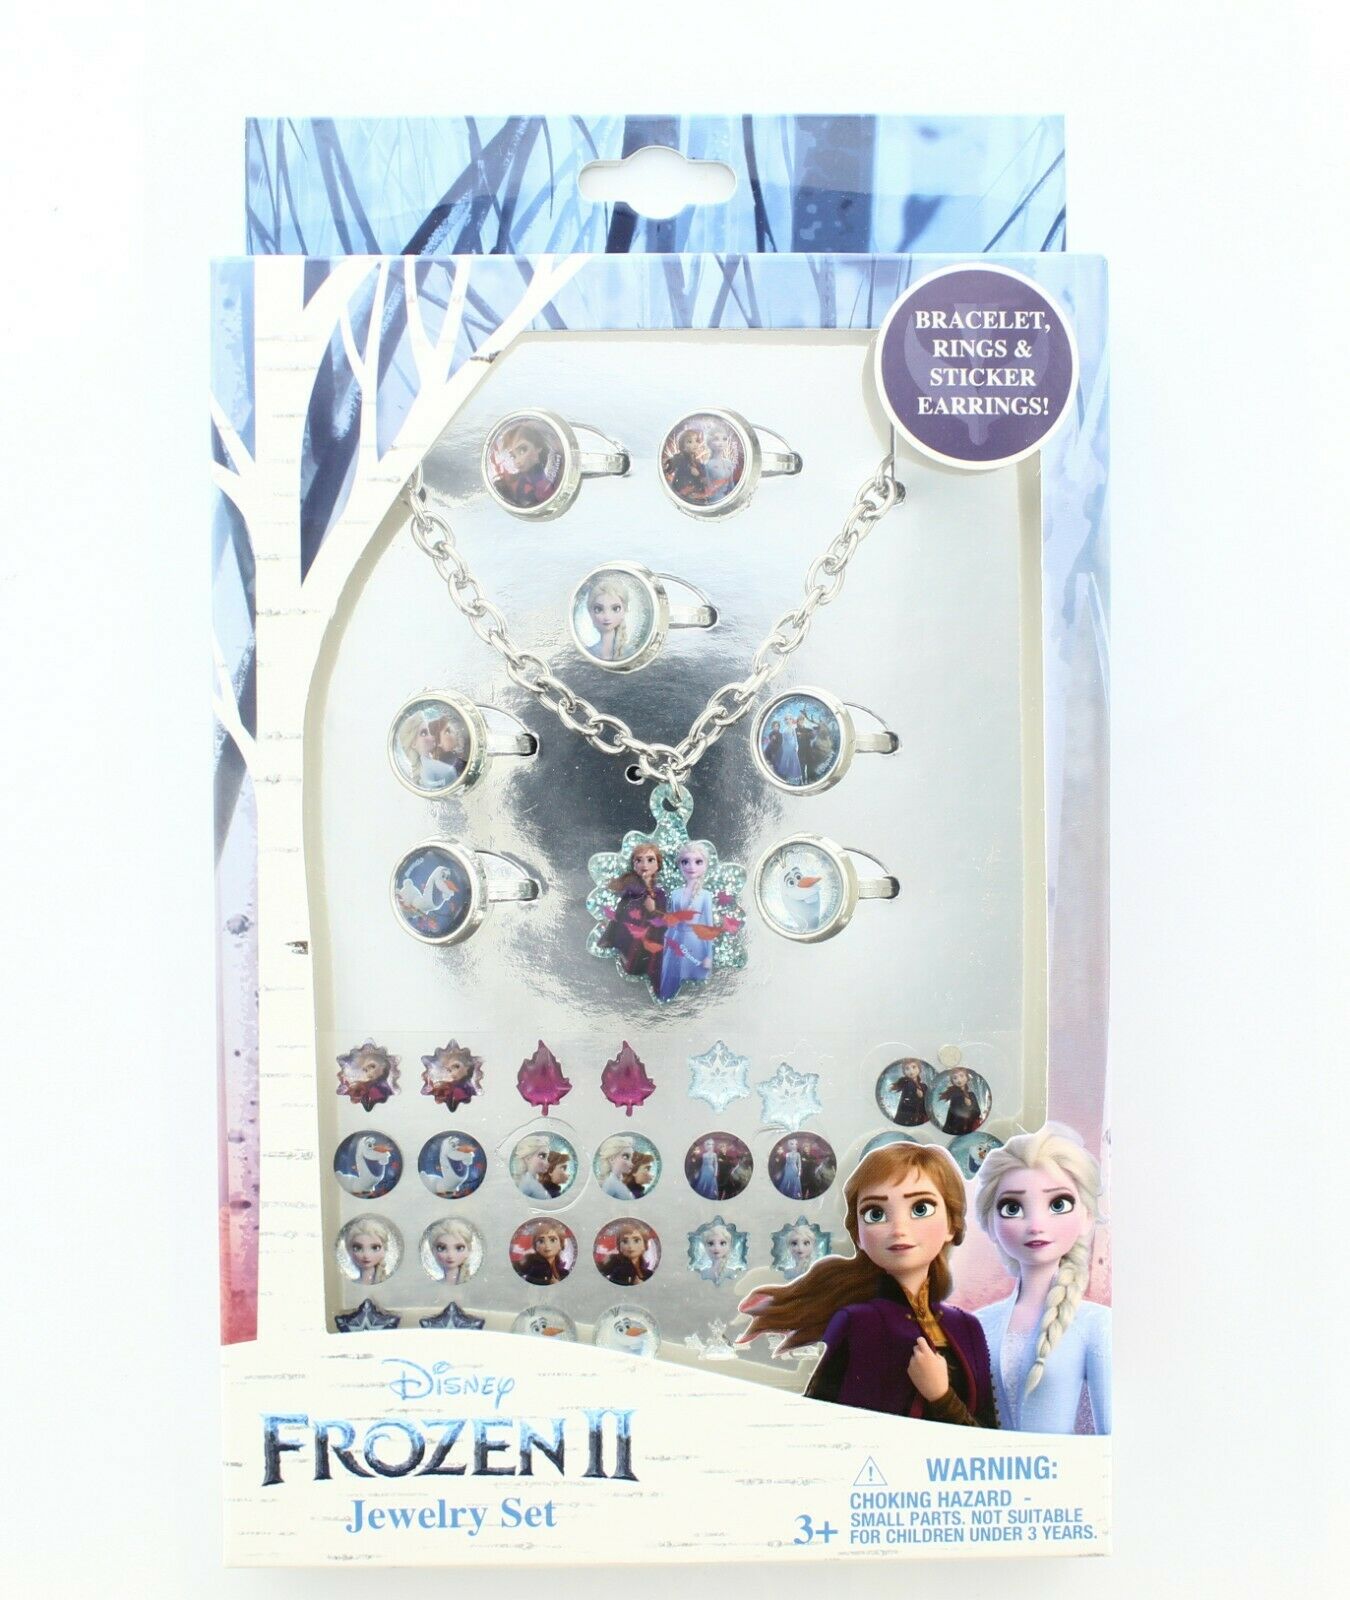 Frozen 2 Girls Jewelry Set, Bracelet Rings and Sticker Earrings, Ages 3+